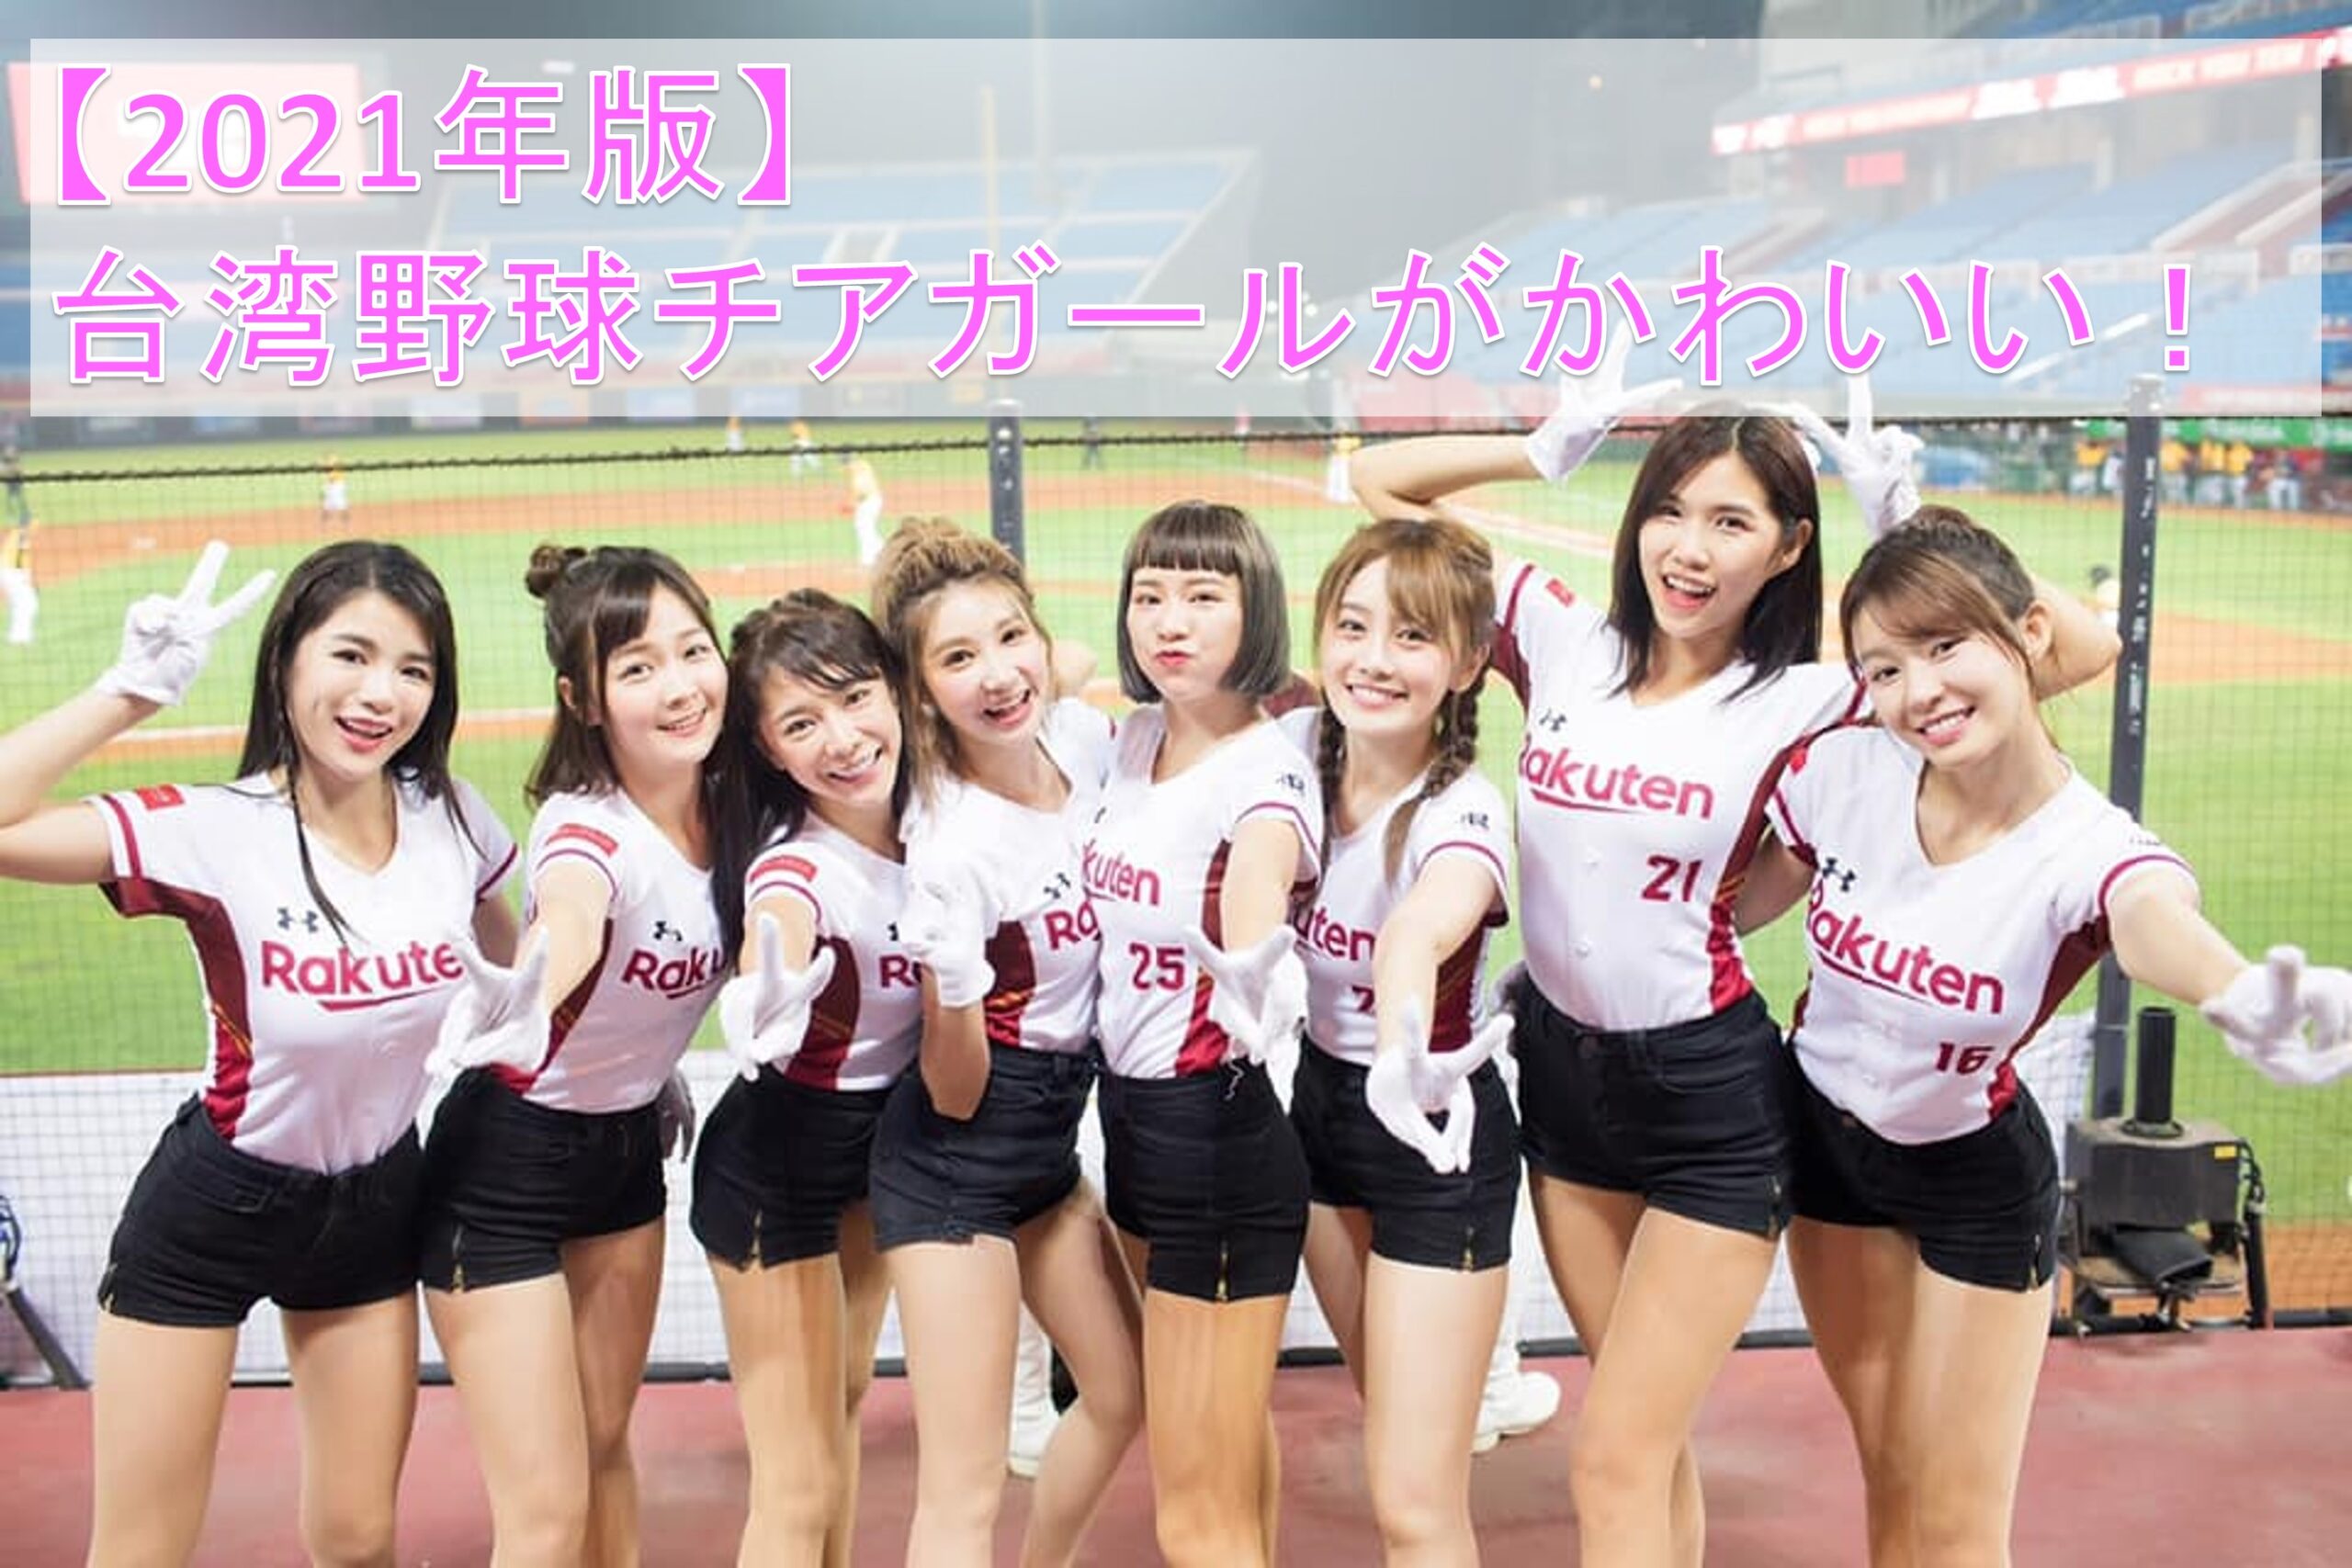 21年版 台湾野球チアガールがかわいい 美人チア人気ランキング まるごと台湾